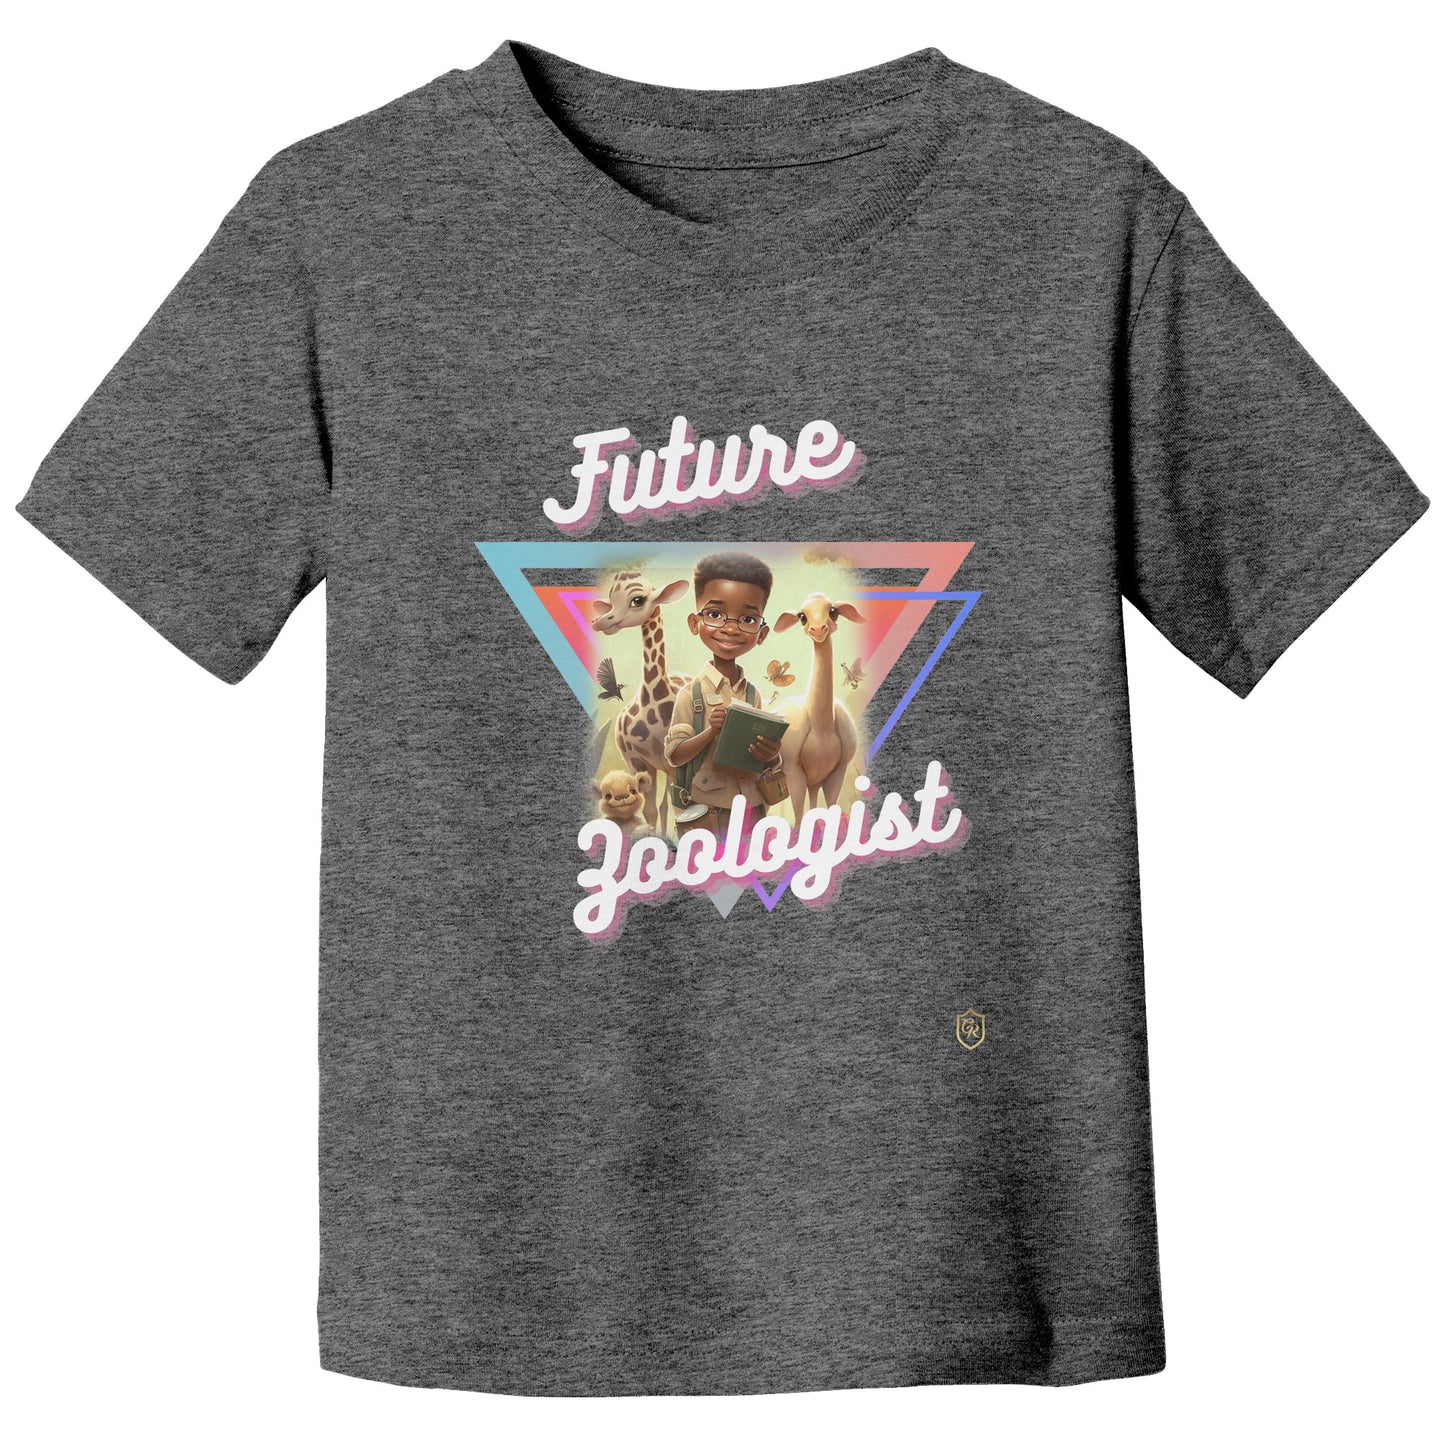 Boy's Future Zoologist T-shirt